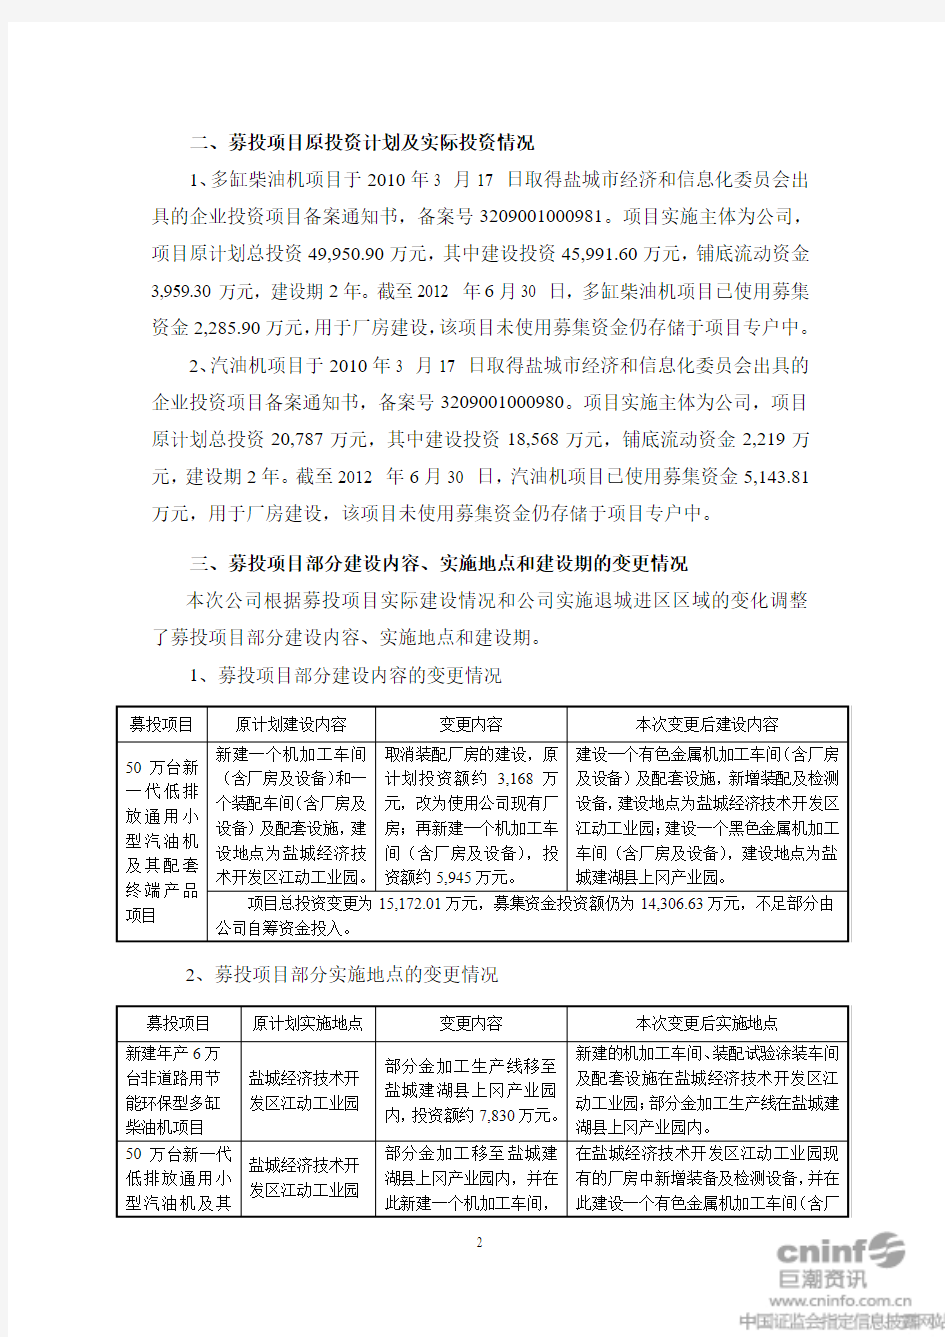 江苏江淮动力股份有限公司 关于变更募投项目部分建设内容